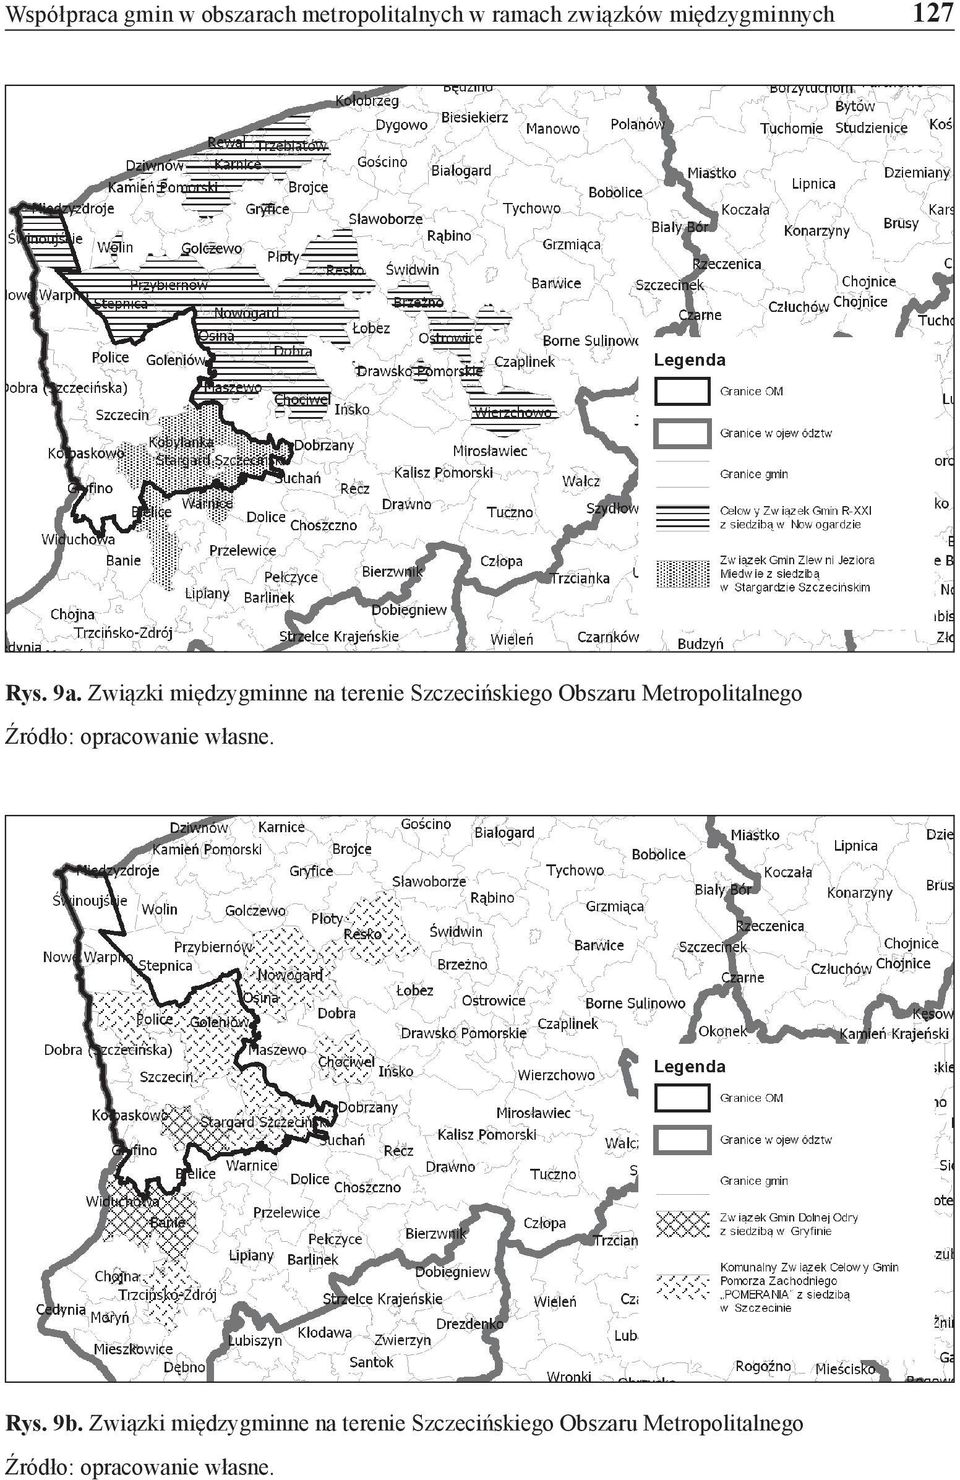 Związki międzygminne na terenie Szczecińskiego Obszaru